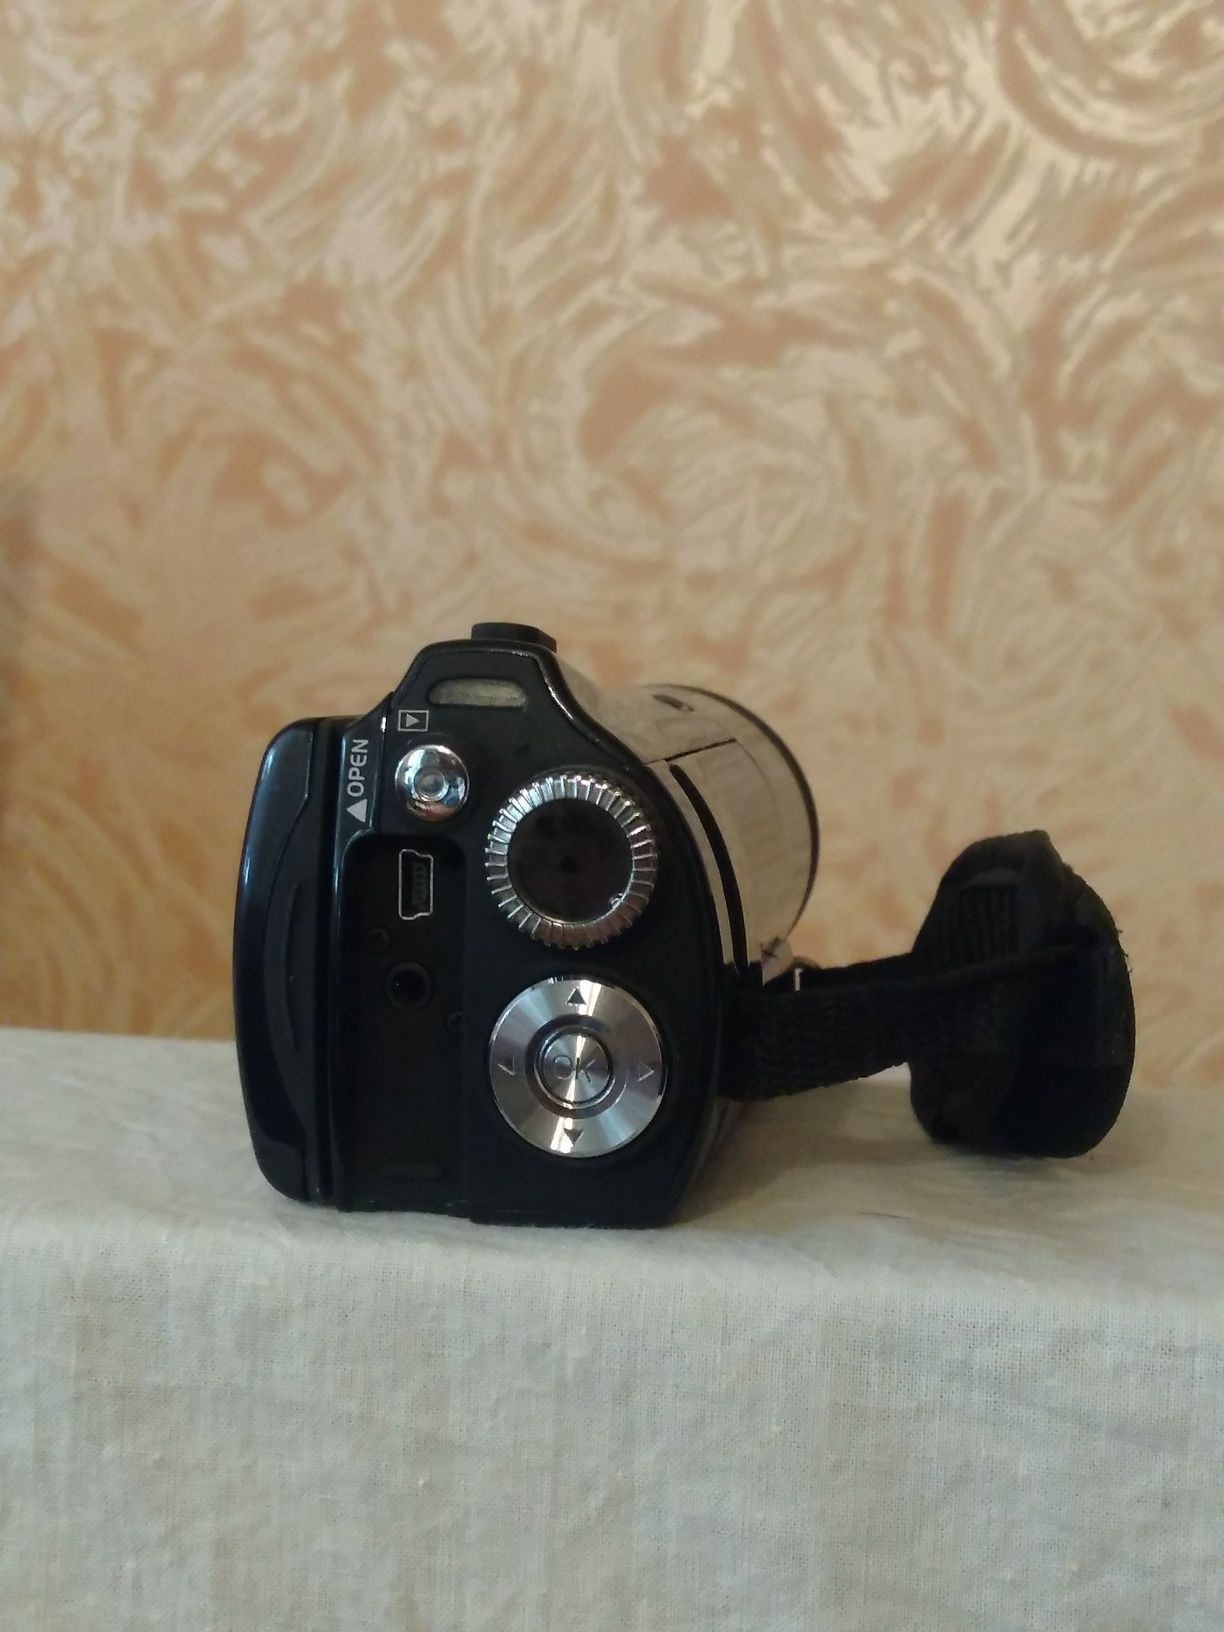 Видеокамера HDR-CX550E